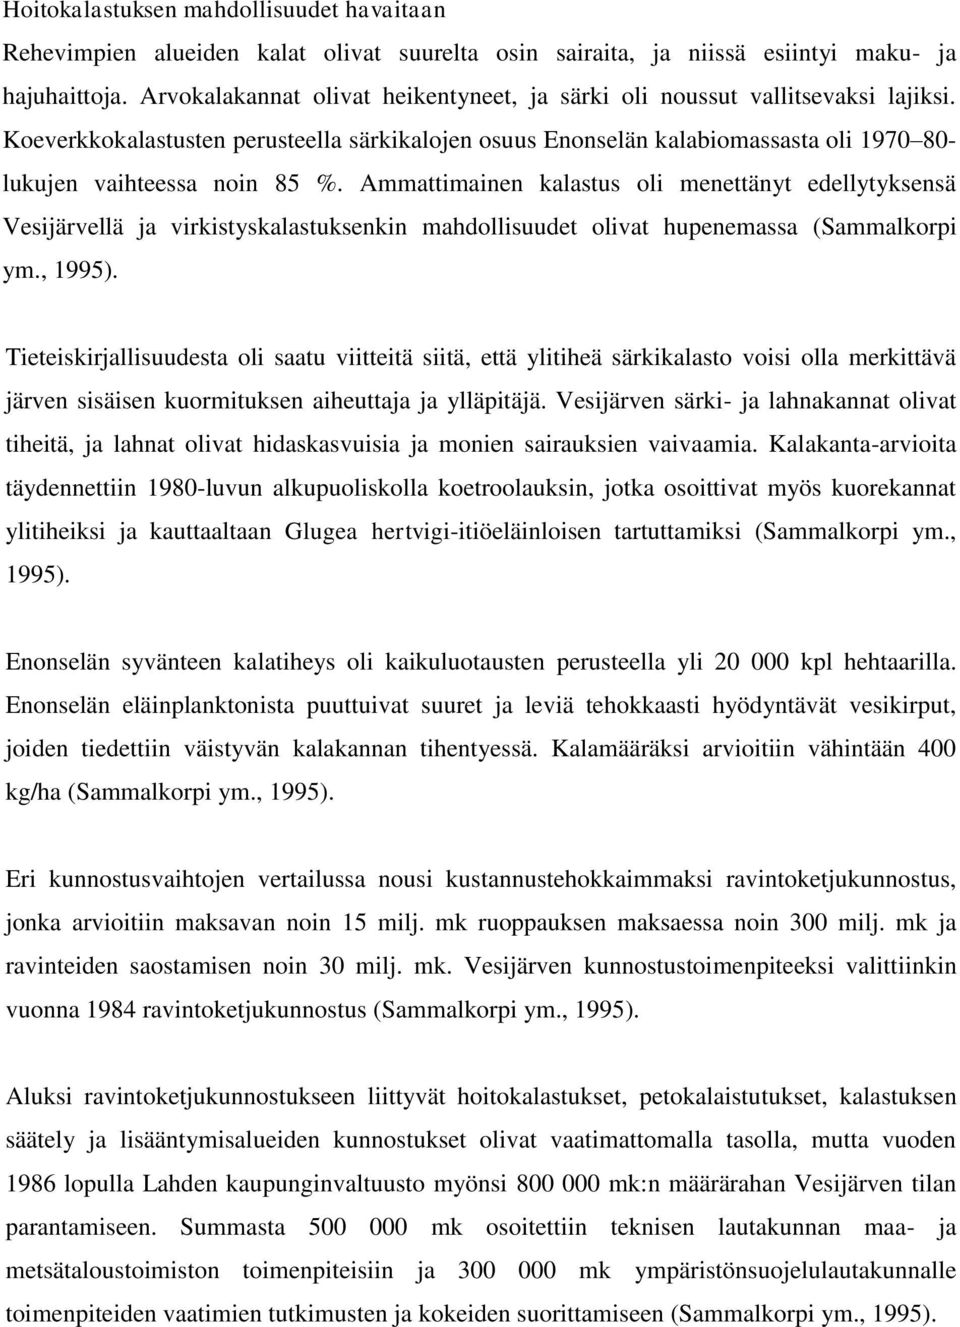 Ammattimainen kalastus oli menettänyt edellytyksensä Vesijärvellä ja virkistyskalastuksenkin mahdollisuudet olivat hupenemassa (Sammalkorpi ym., 1995).